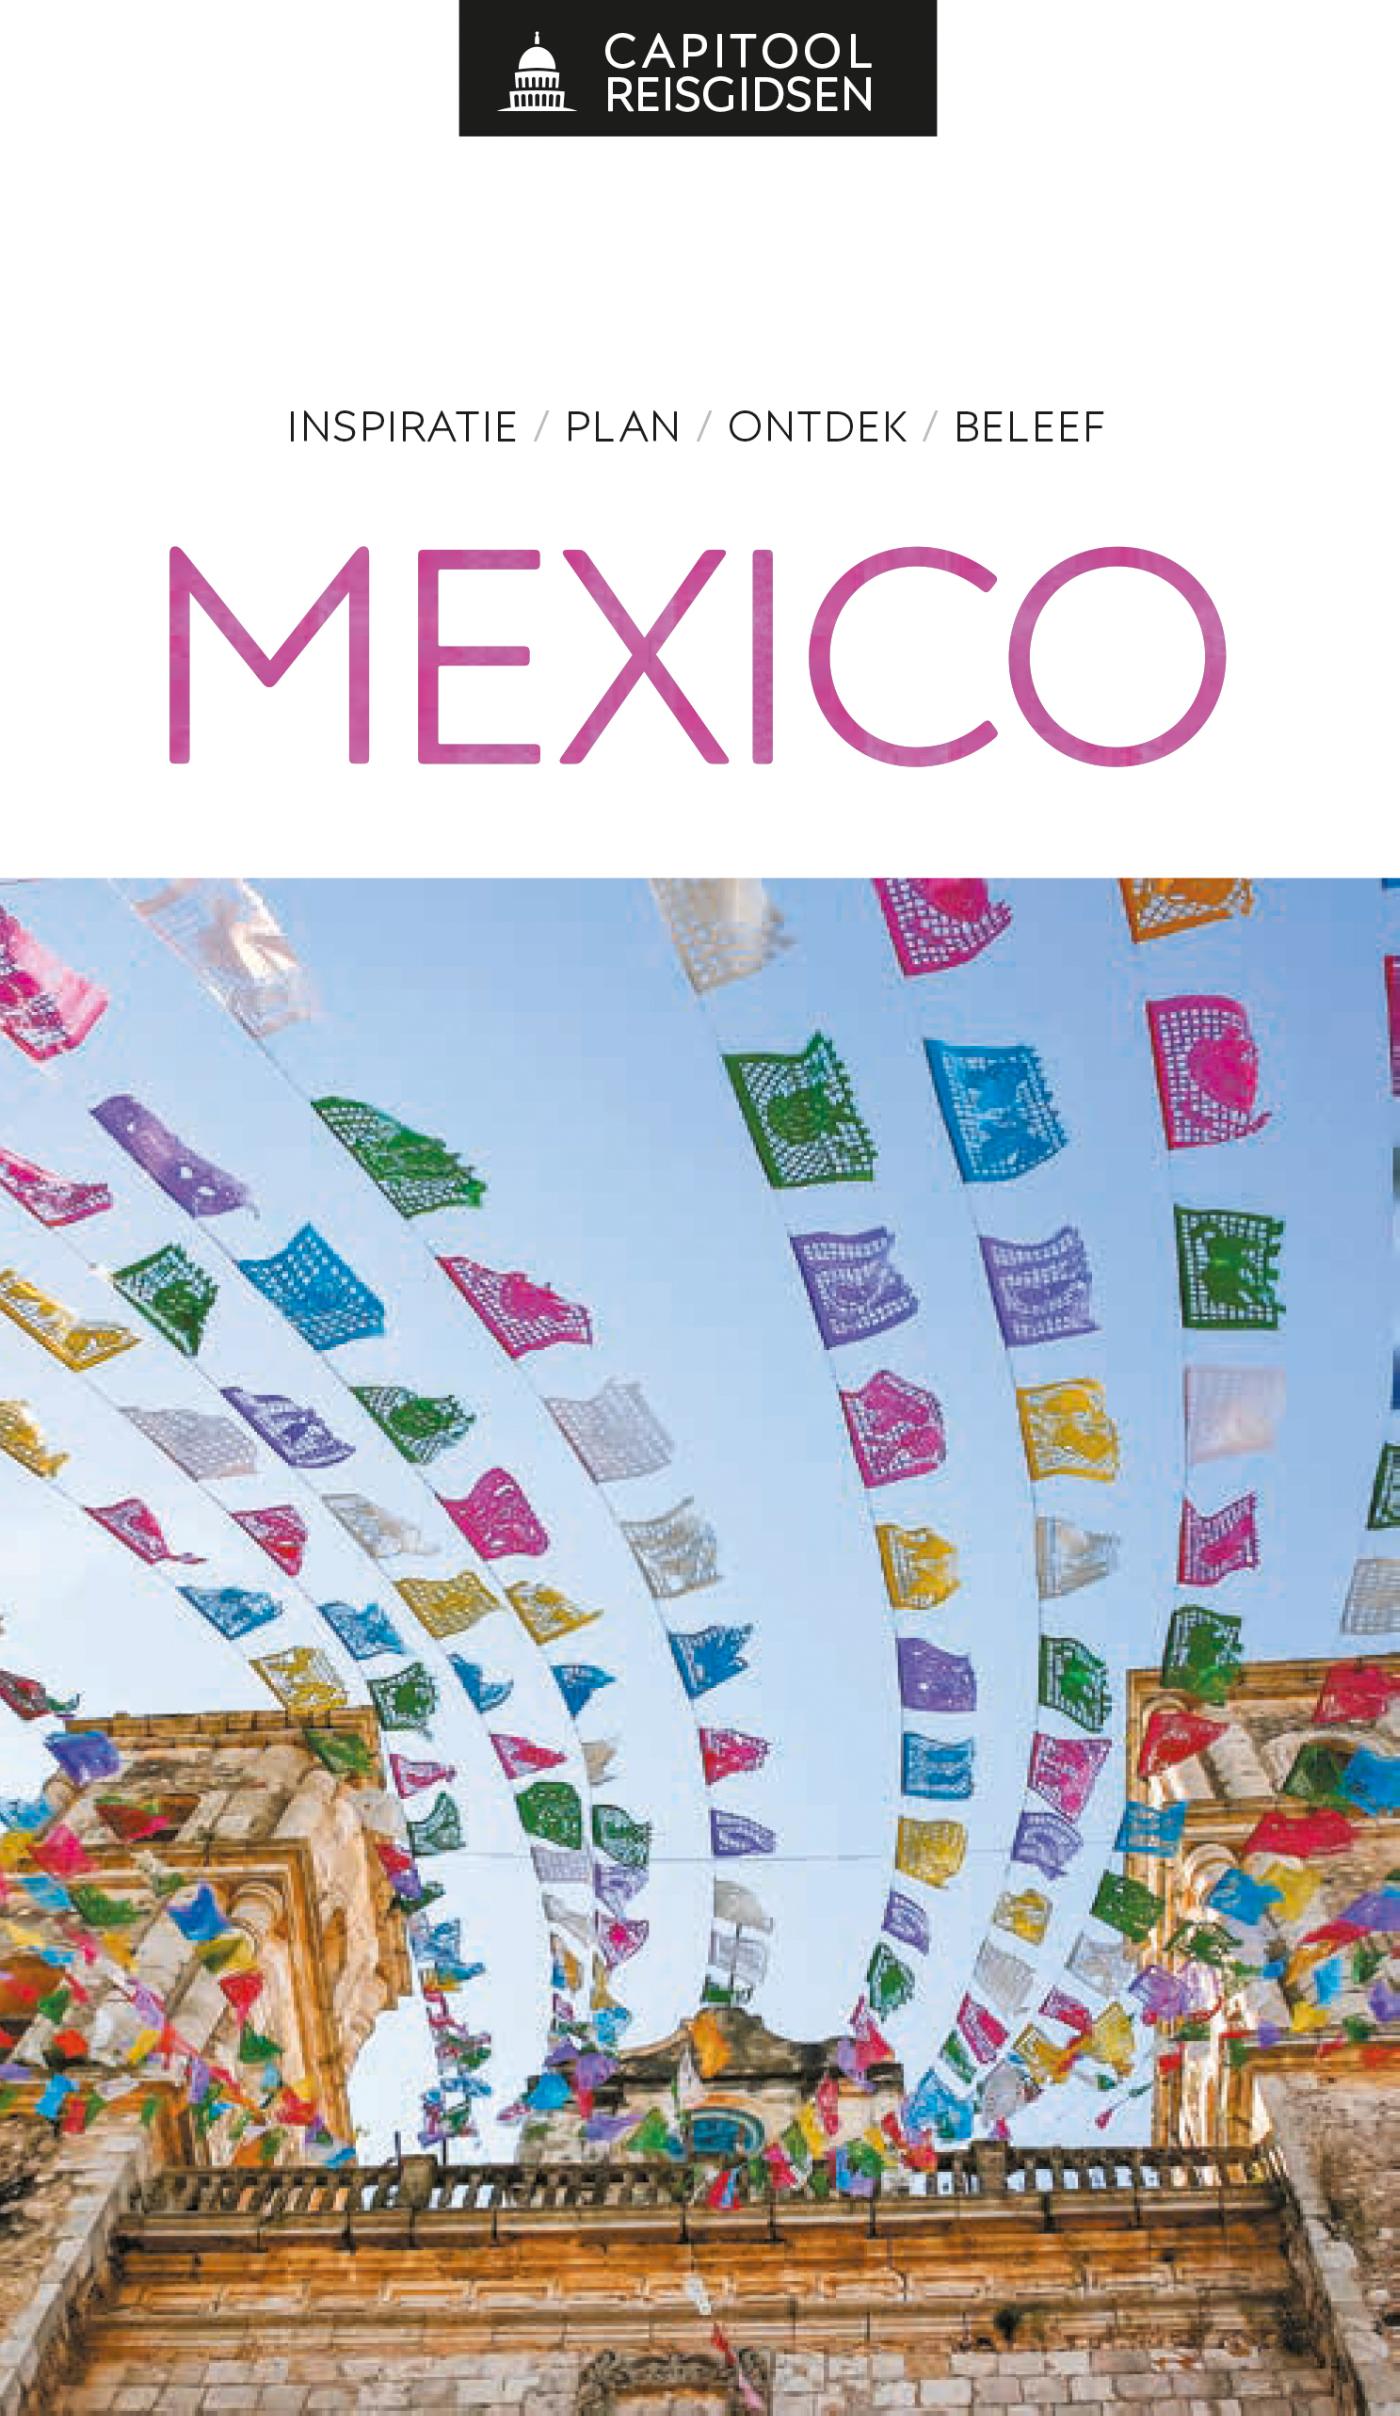 Online bestellen: Reisgids Capitool Reisgidsen Mexico | Unieboek